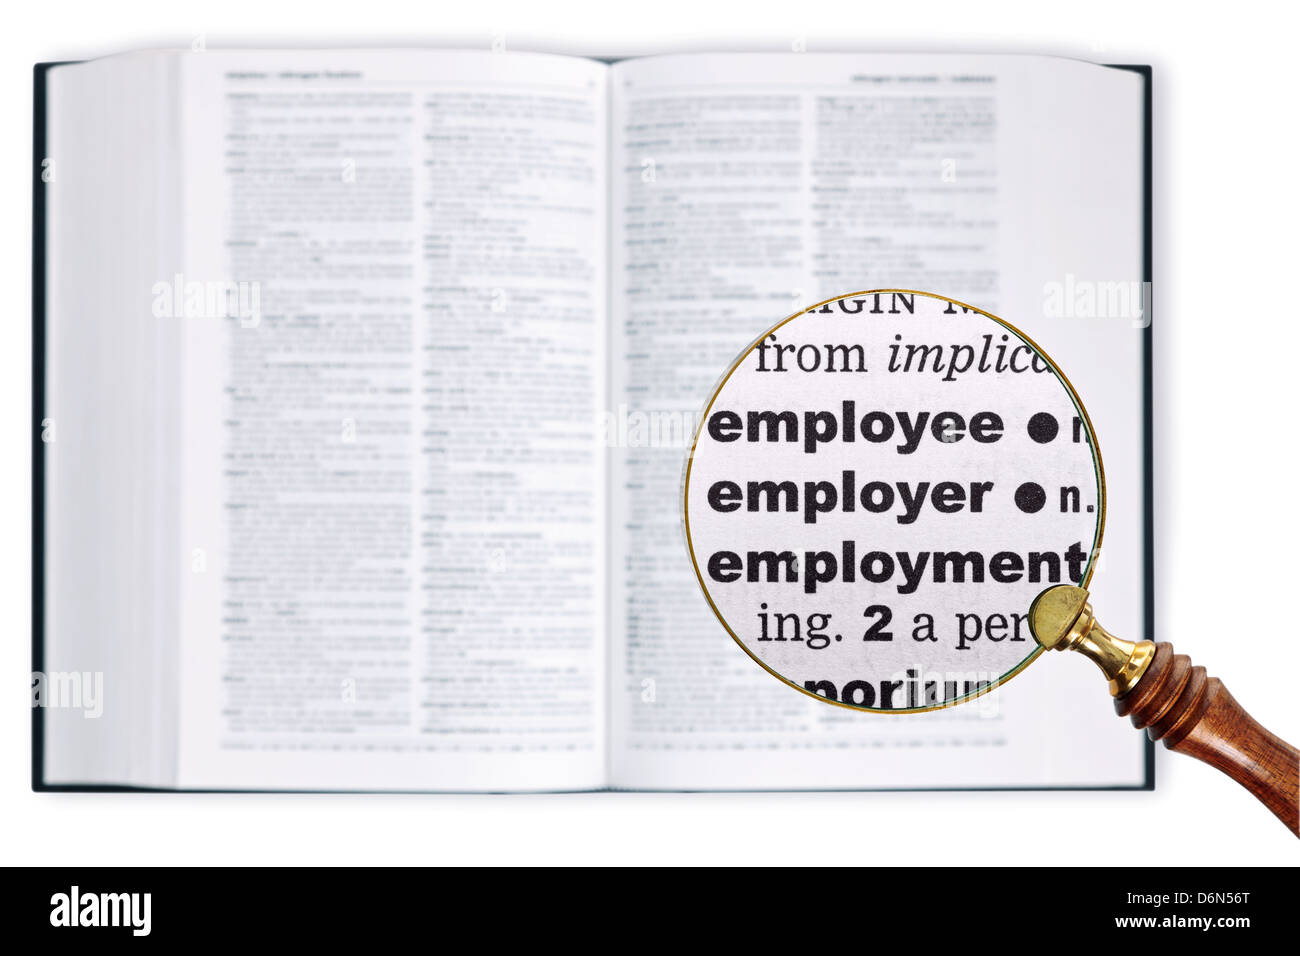 Eine Lupe statt über ein Wörterbuch Wörter Arbeitnehmer, Arbeitgeber und Beschäftigung vergrößert betrachten Stockfoto